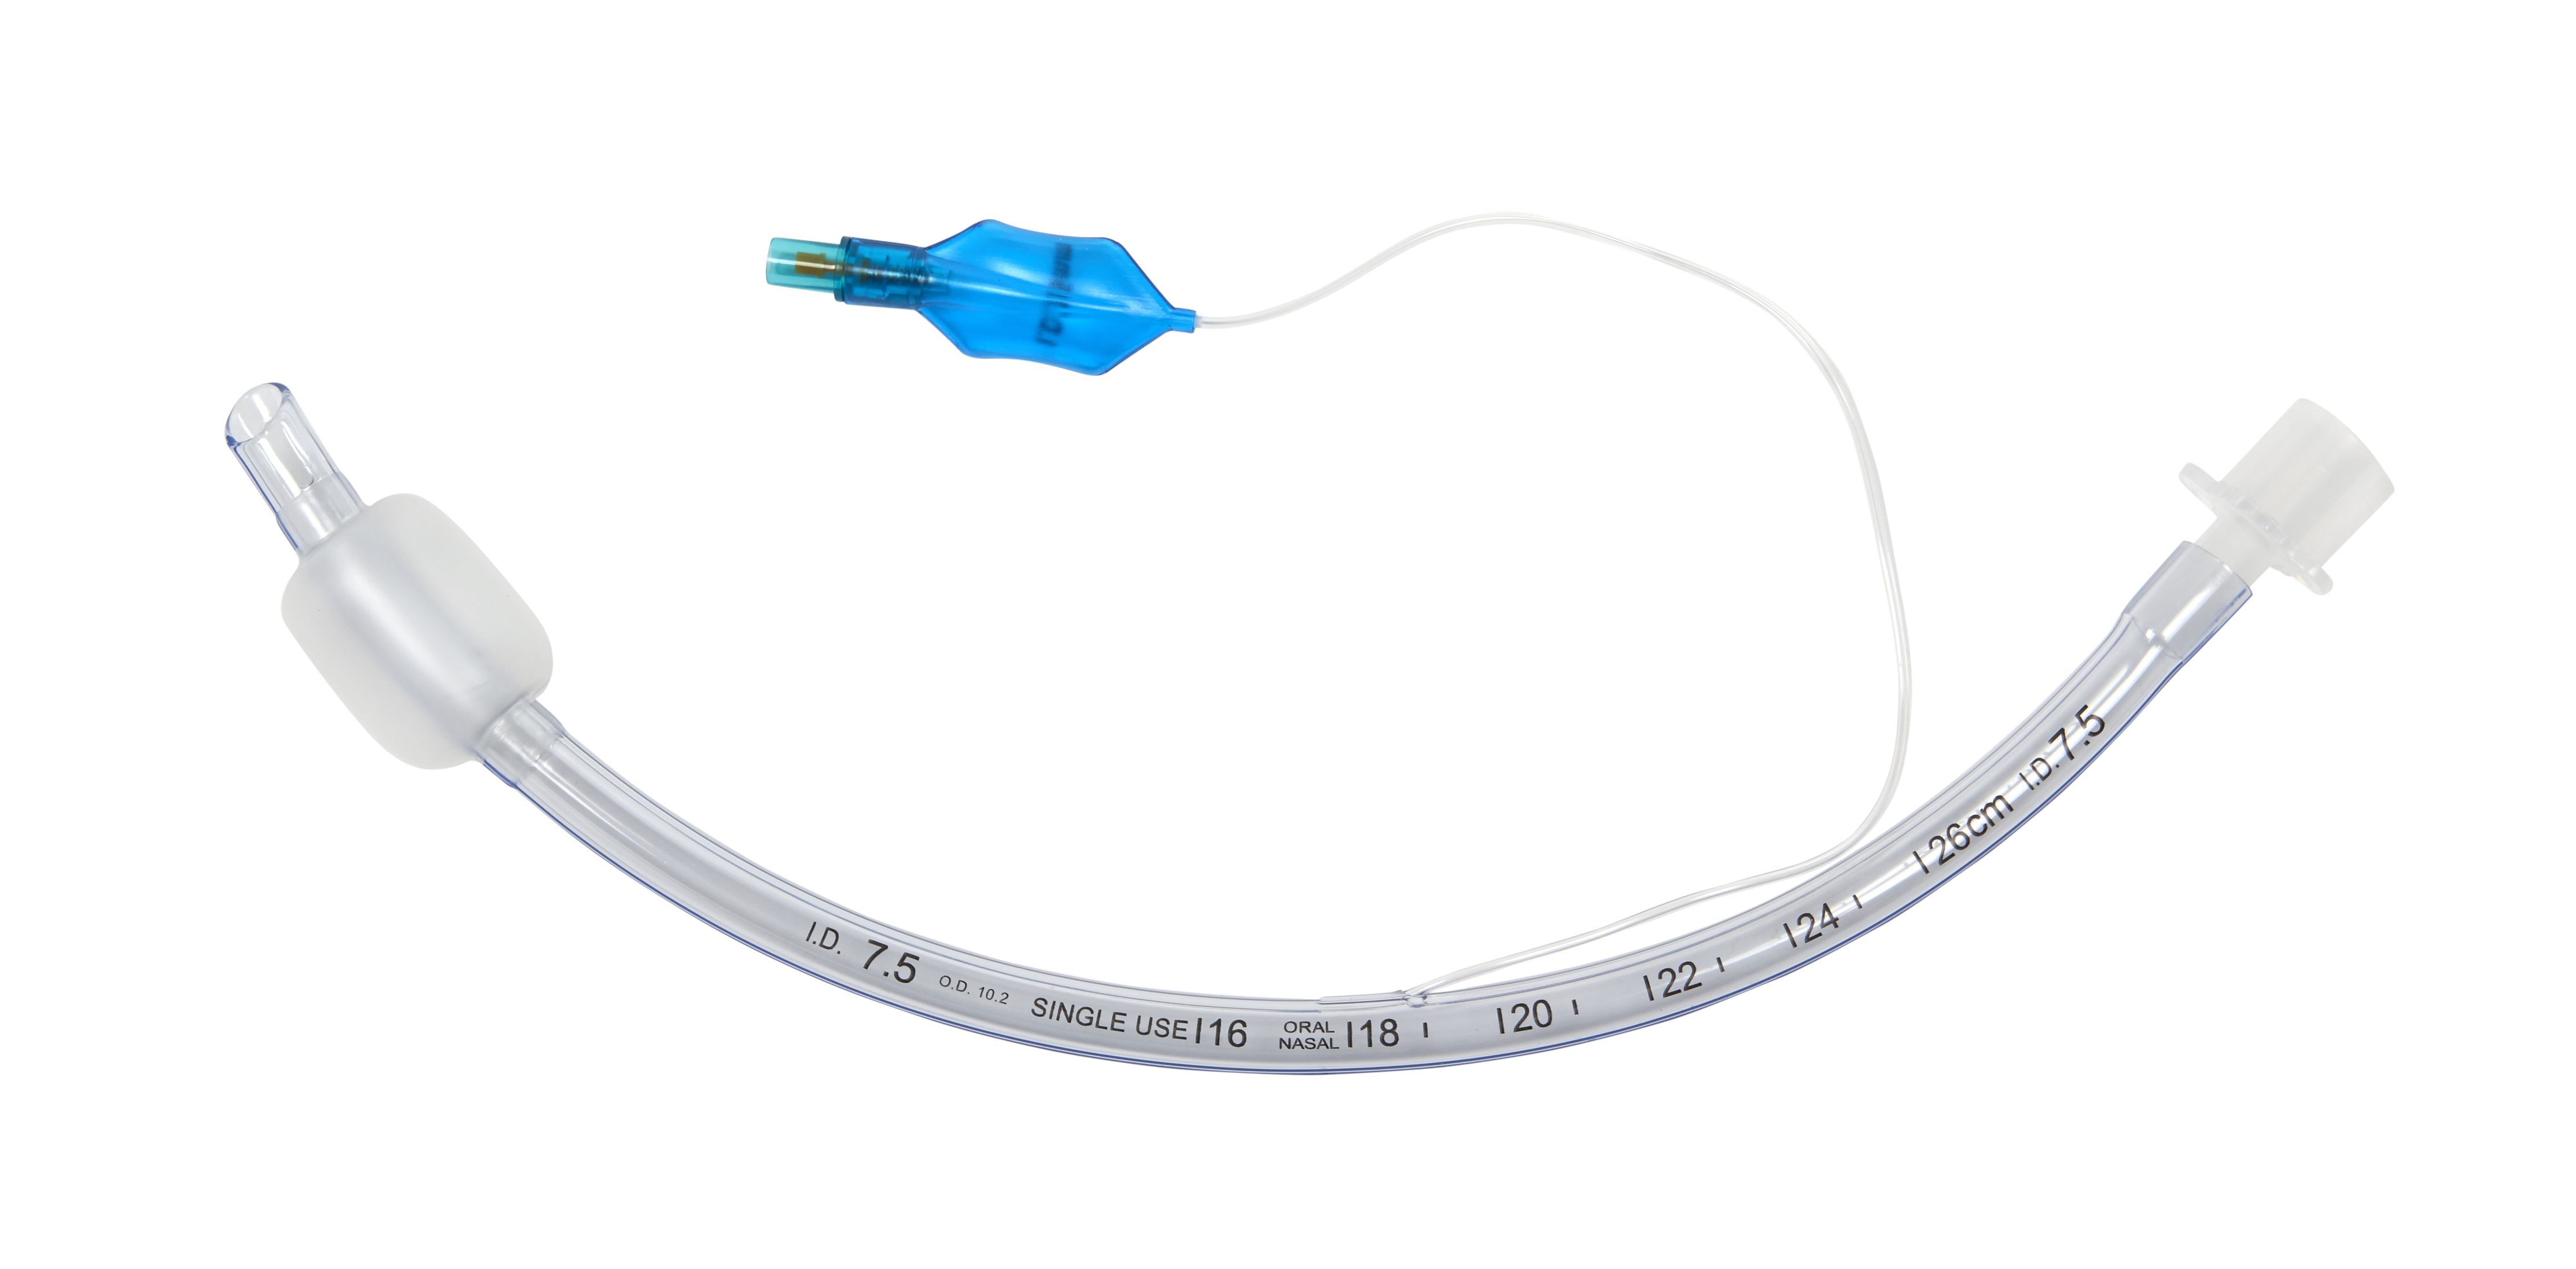 KRUUSE PVC Endotracheal Tubus, with cuff, ID 7.5 mm, OD 10.2 mm, 31 Fr x  32 cm (12.6''), 10/pk